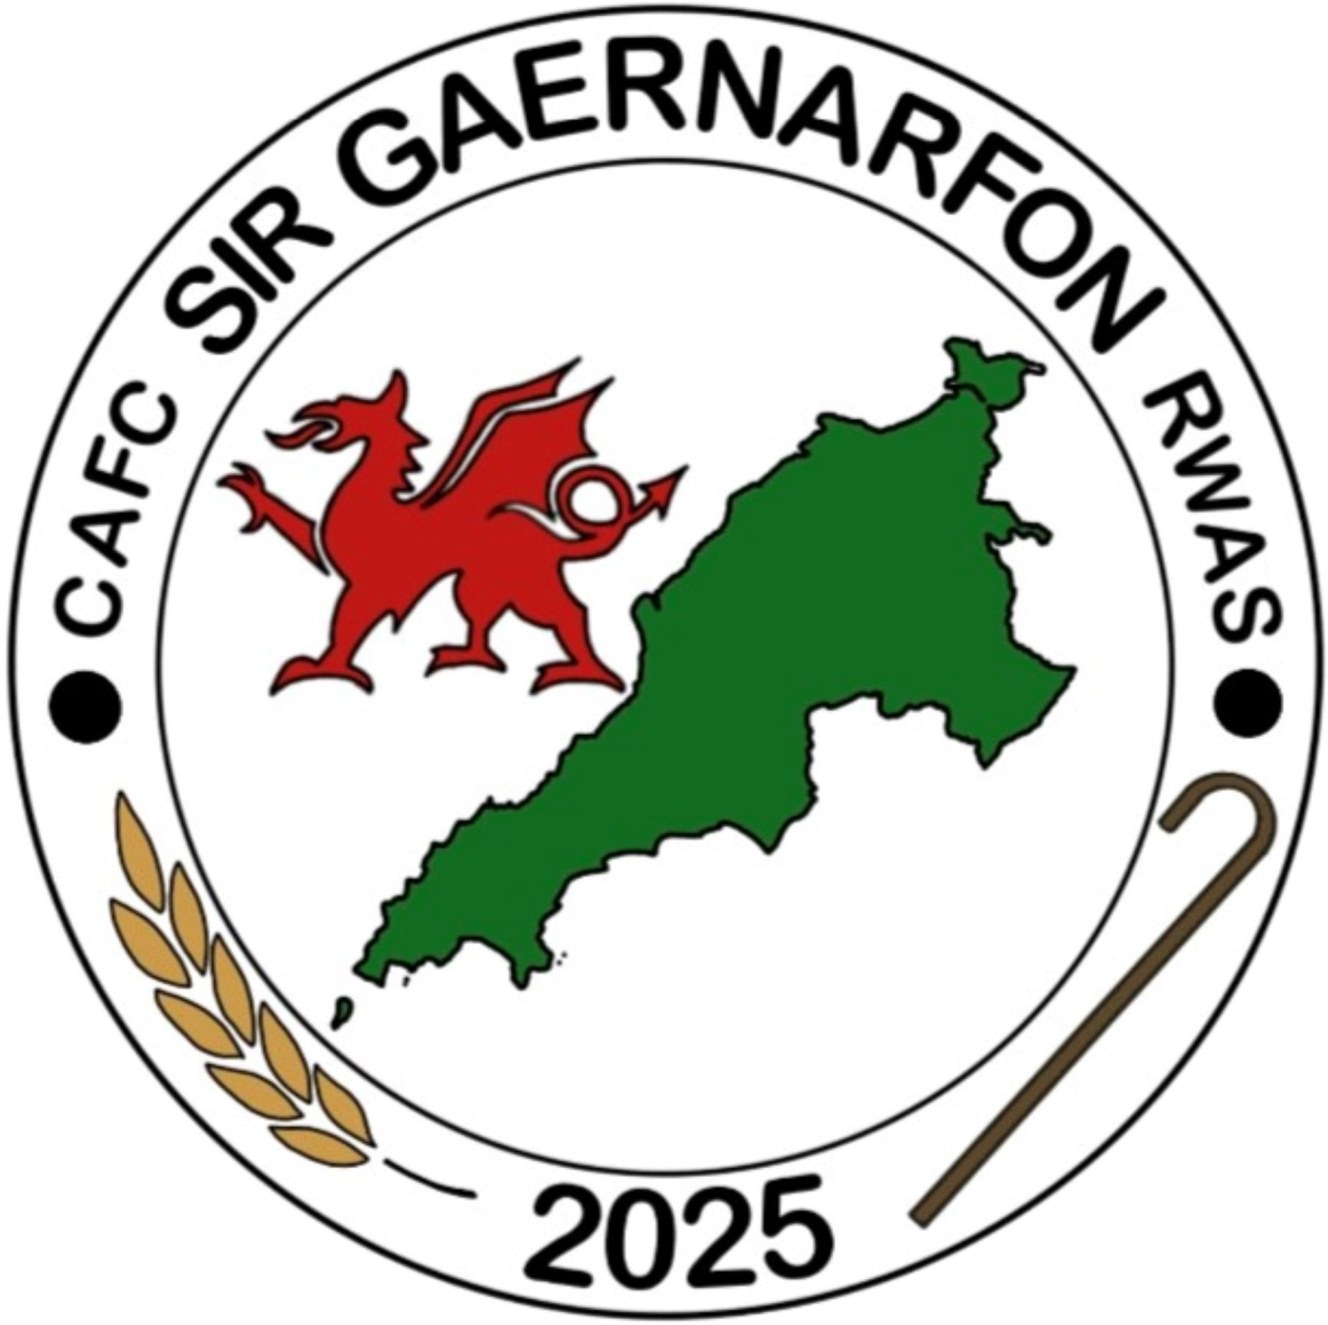 CAFC Sir Gaernarfon